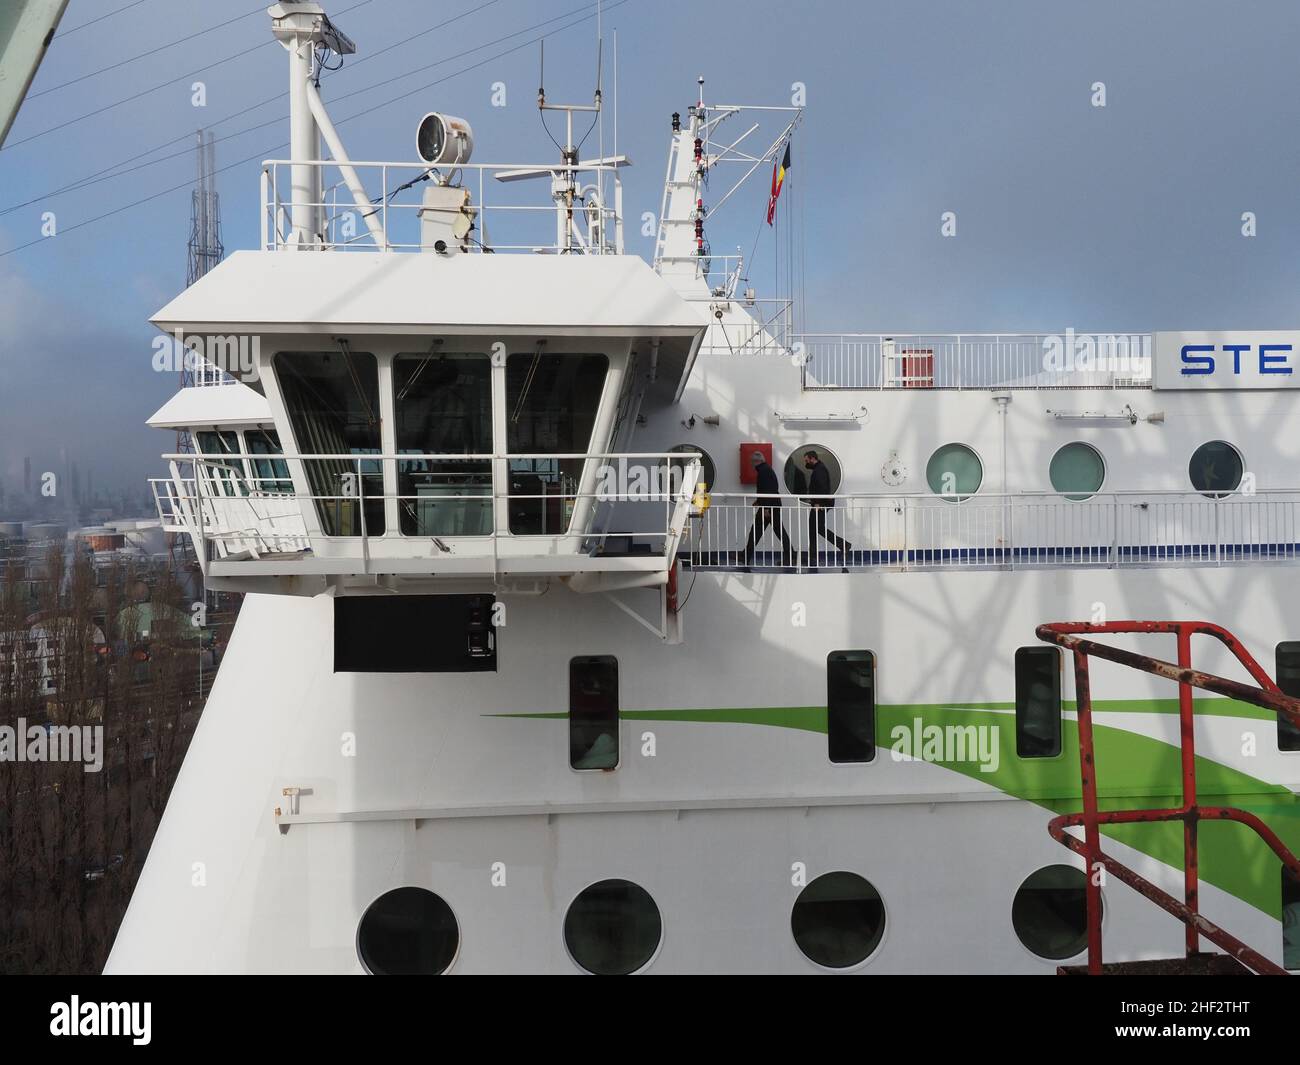 El ferry de la línea de Stena Stena Brittanica se está maniobrando en un muelle seco en el puerto de Amberes, Bélgica. El puente de la Brittanica desde un punto de vista inusual Foto de stock